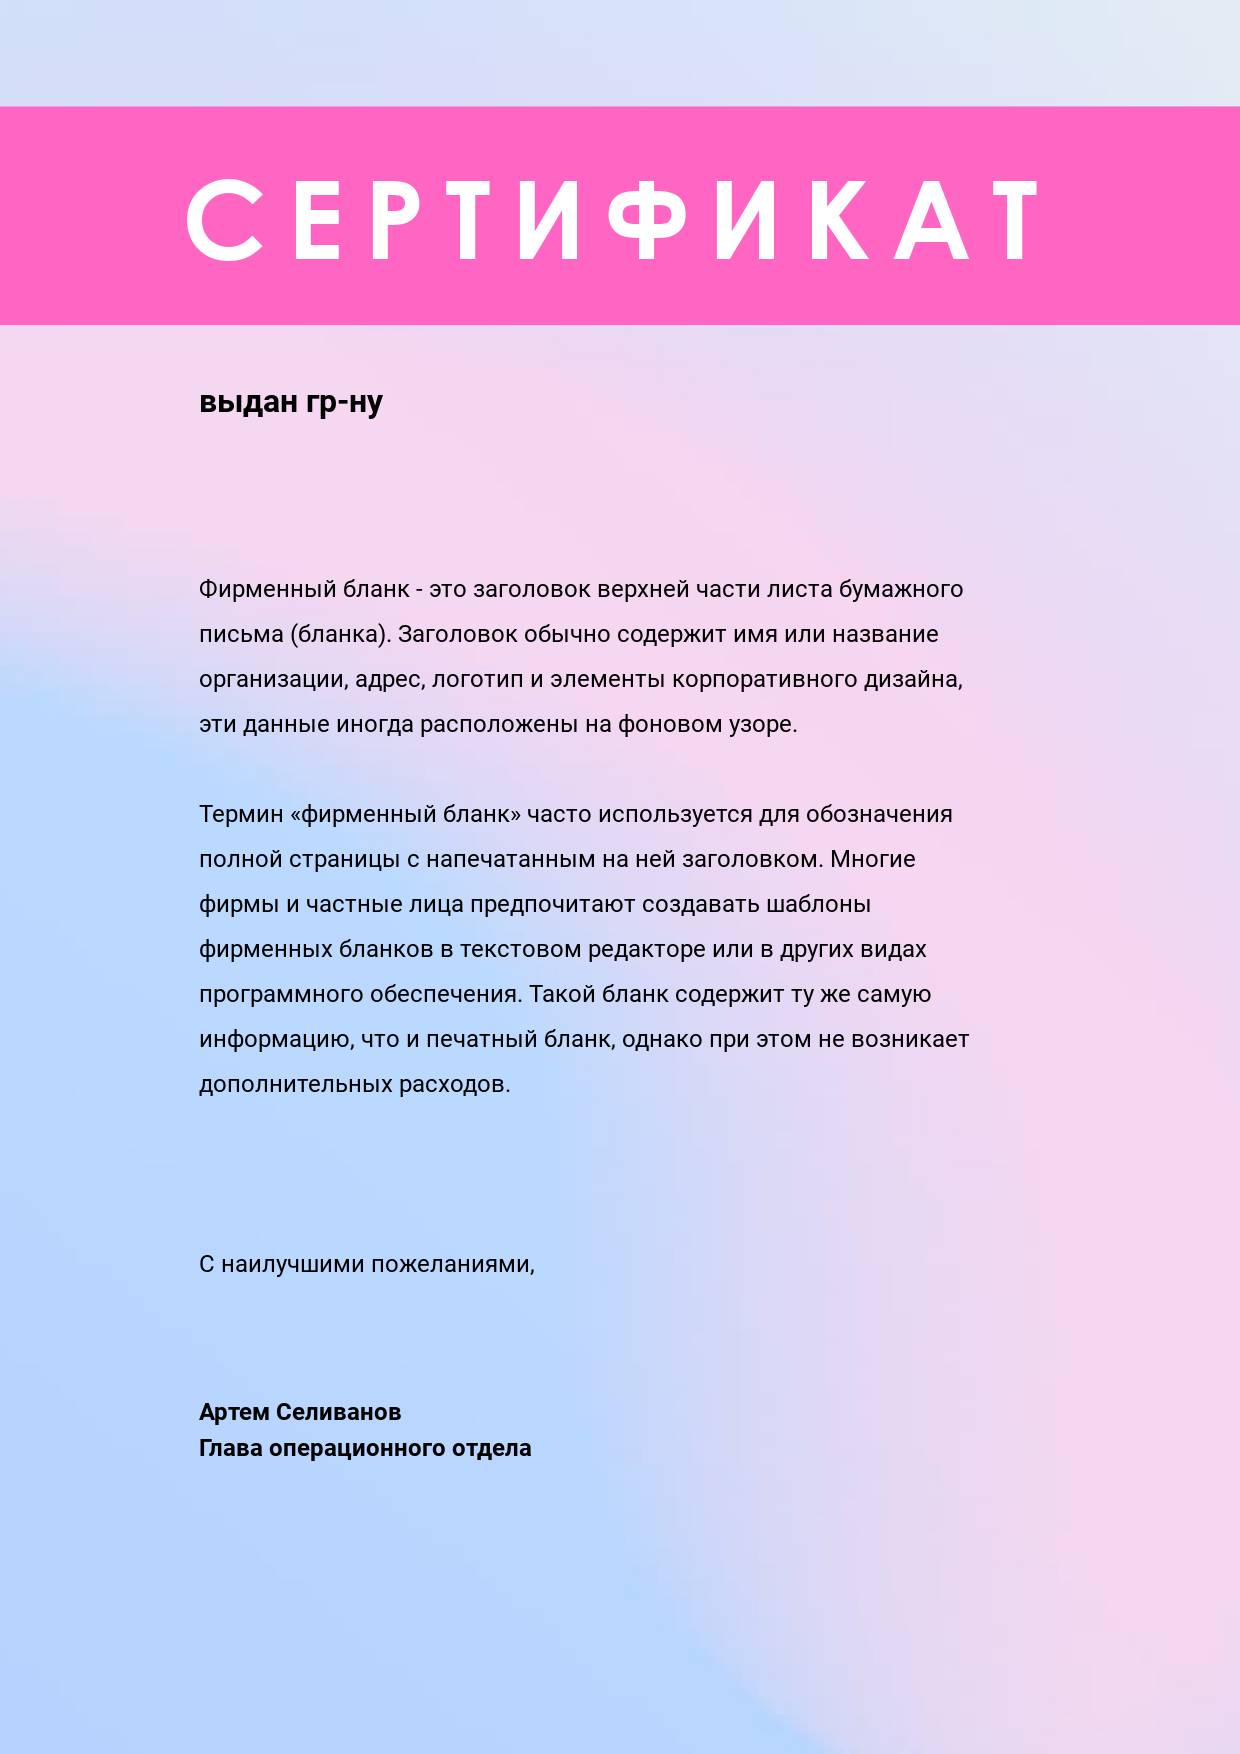 Сертификат в стиле минимализм с розово-голубым градиентным фоном